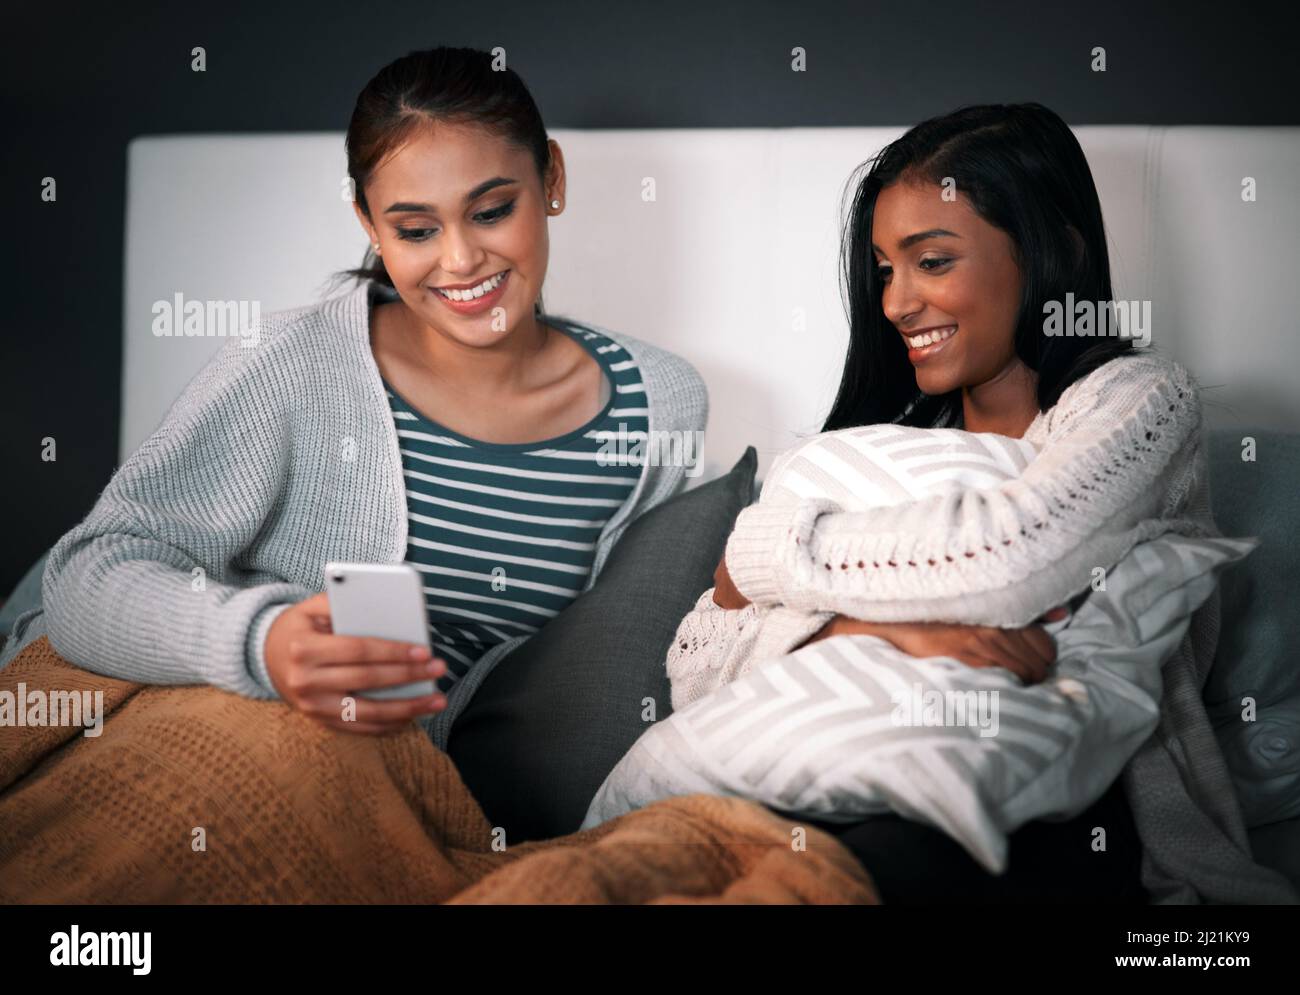 Disfrutar de algunos acecho en línea. Foto de una mujer joven mostrando a su amiga algo en su teléfono móvil mientras se sienta juntos en una cama. Foto de stock